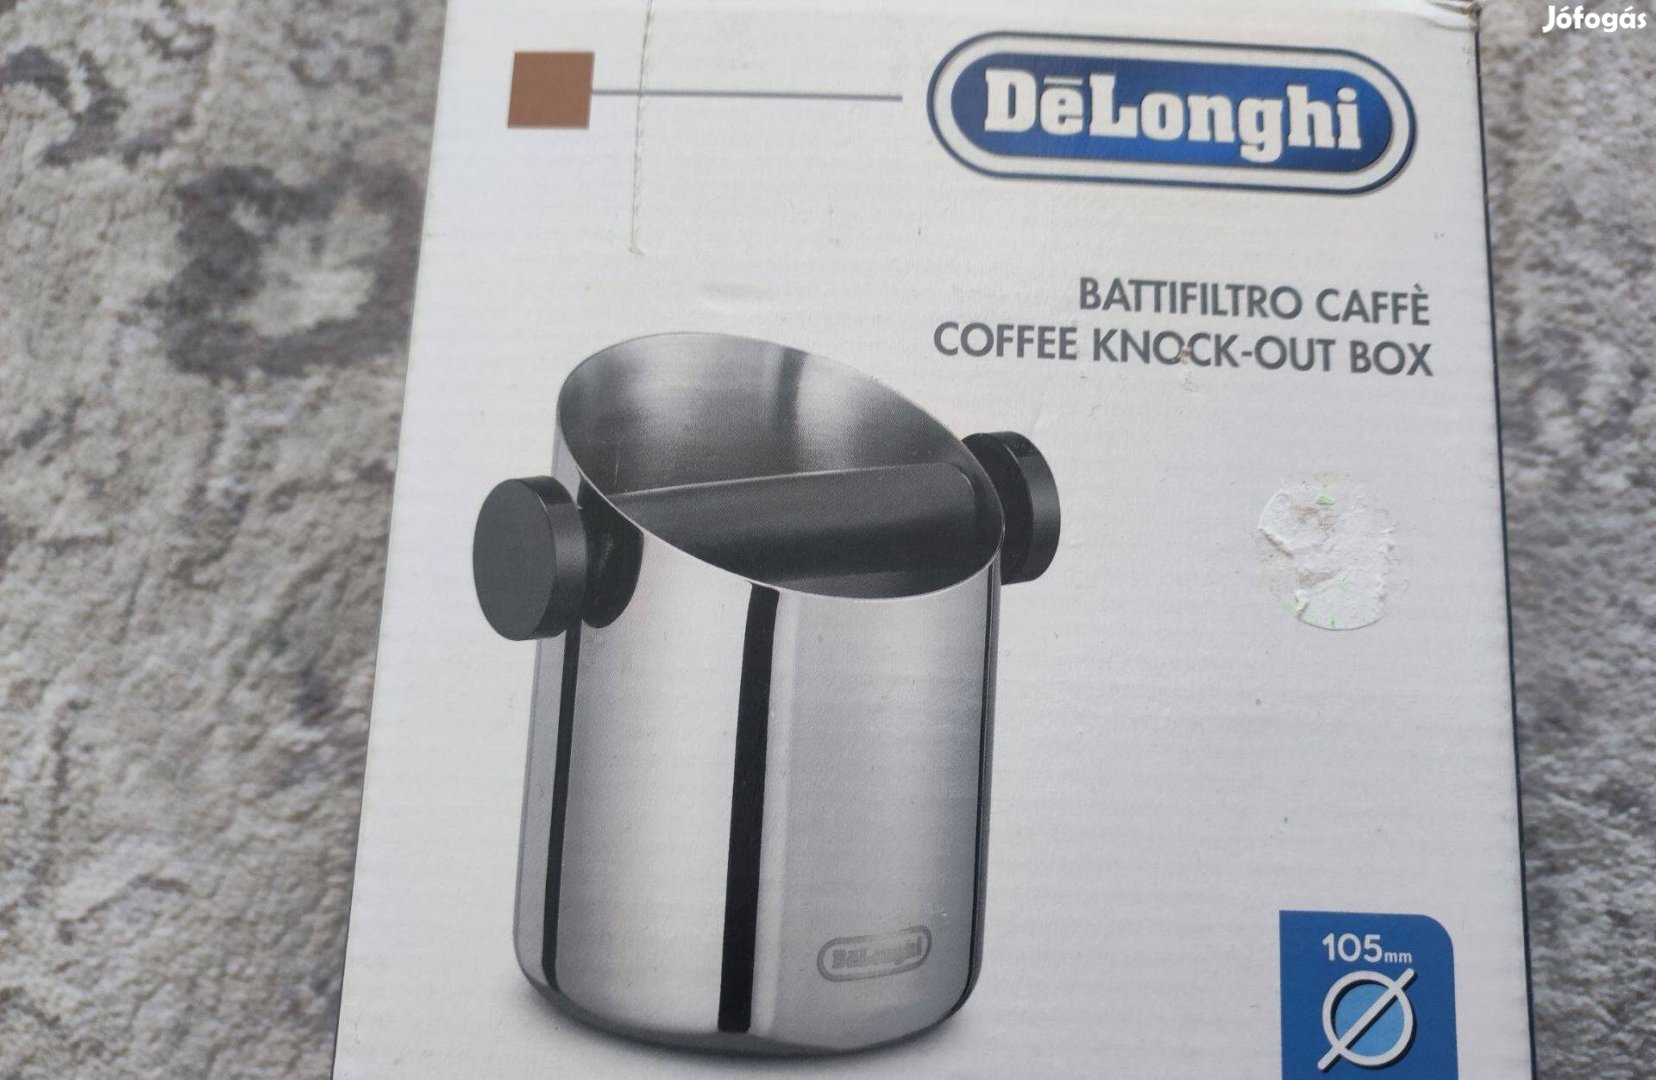 Delonghi Dlsd 059 kávé zacctartó újonnan új állapotban eladó